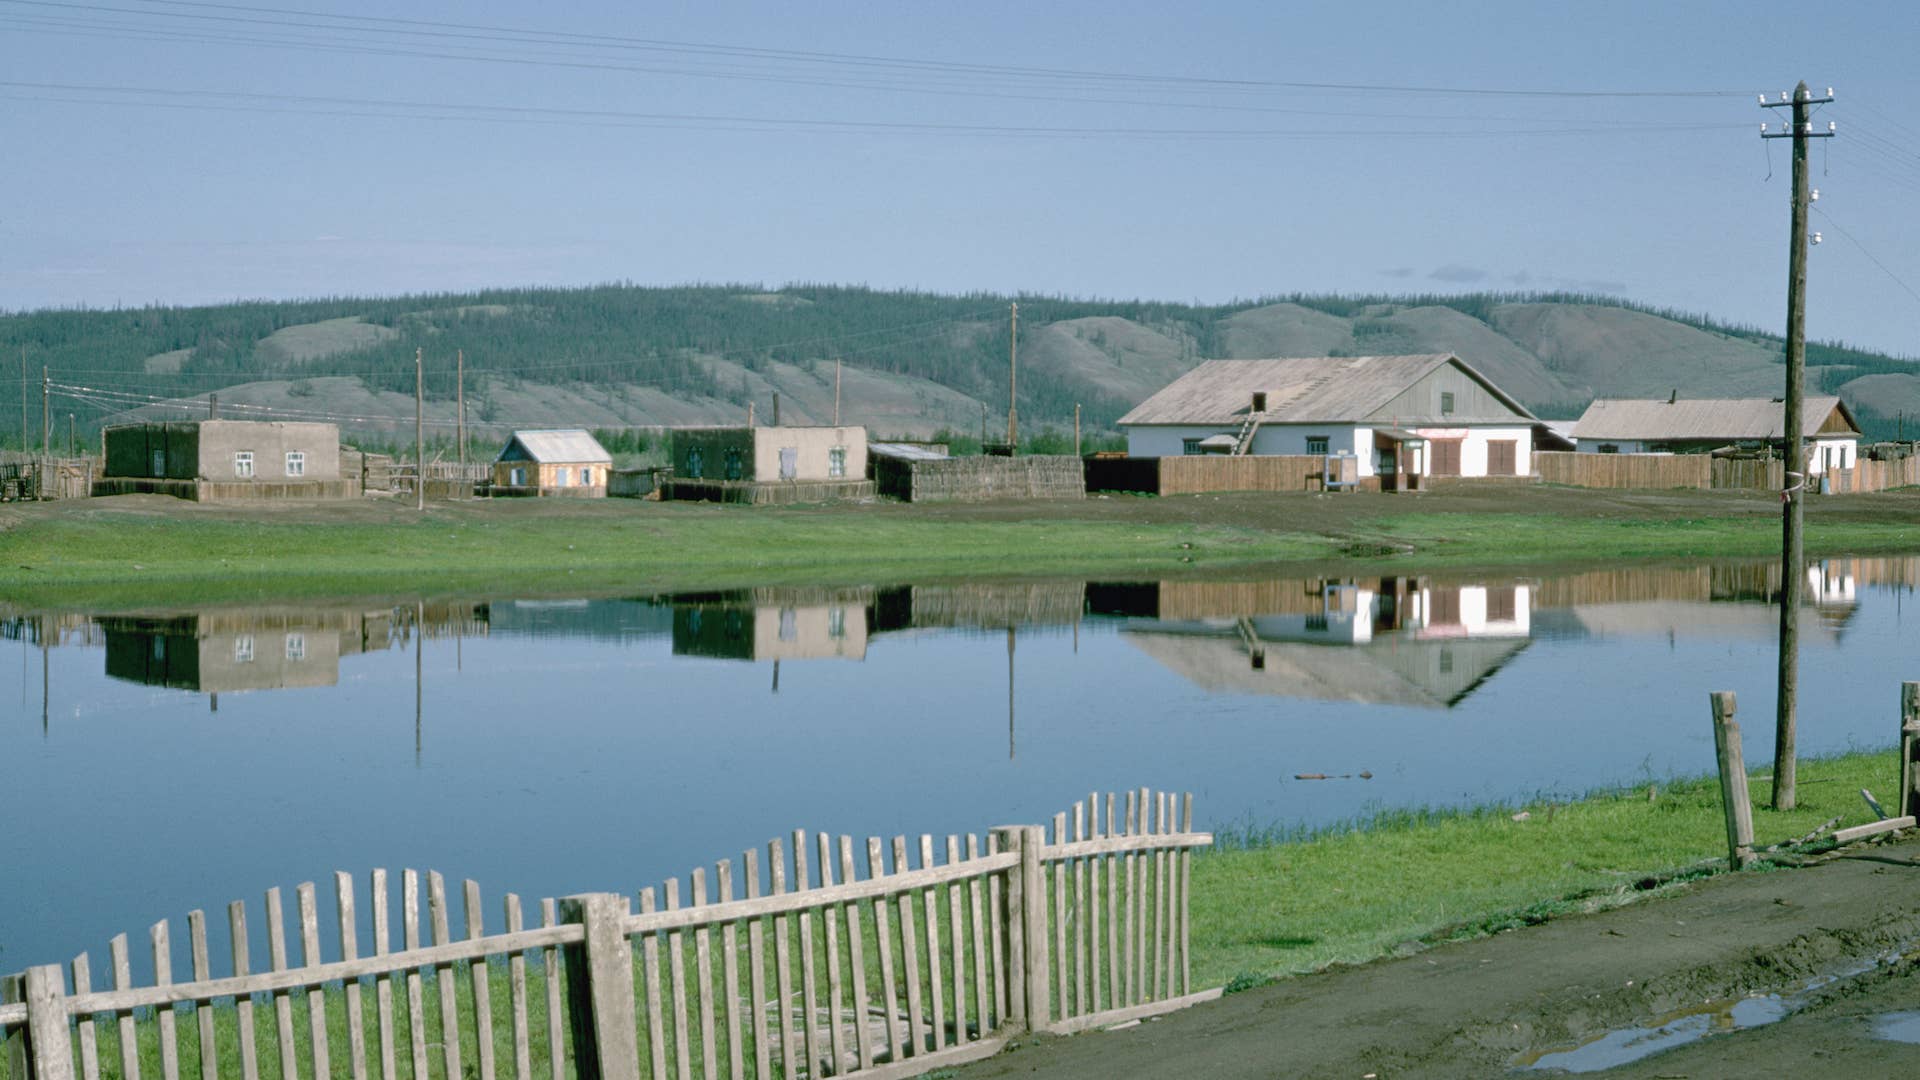 Rural scene in Verkhoyansk, USSR.